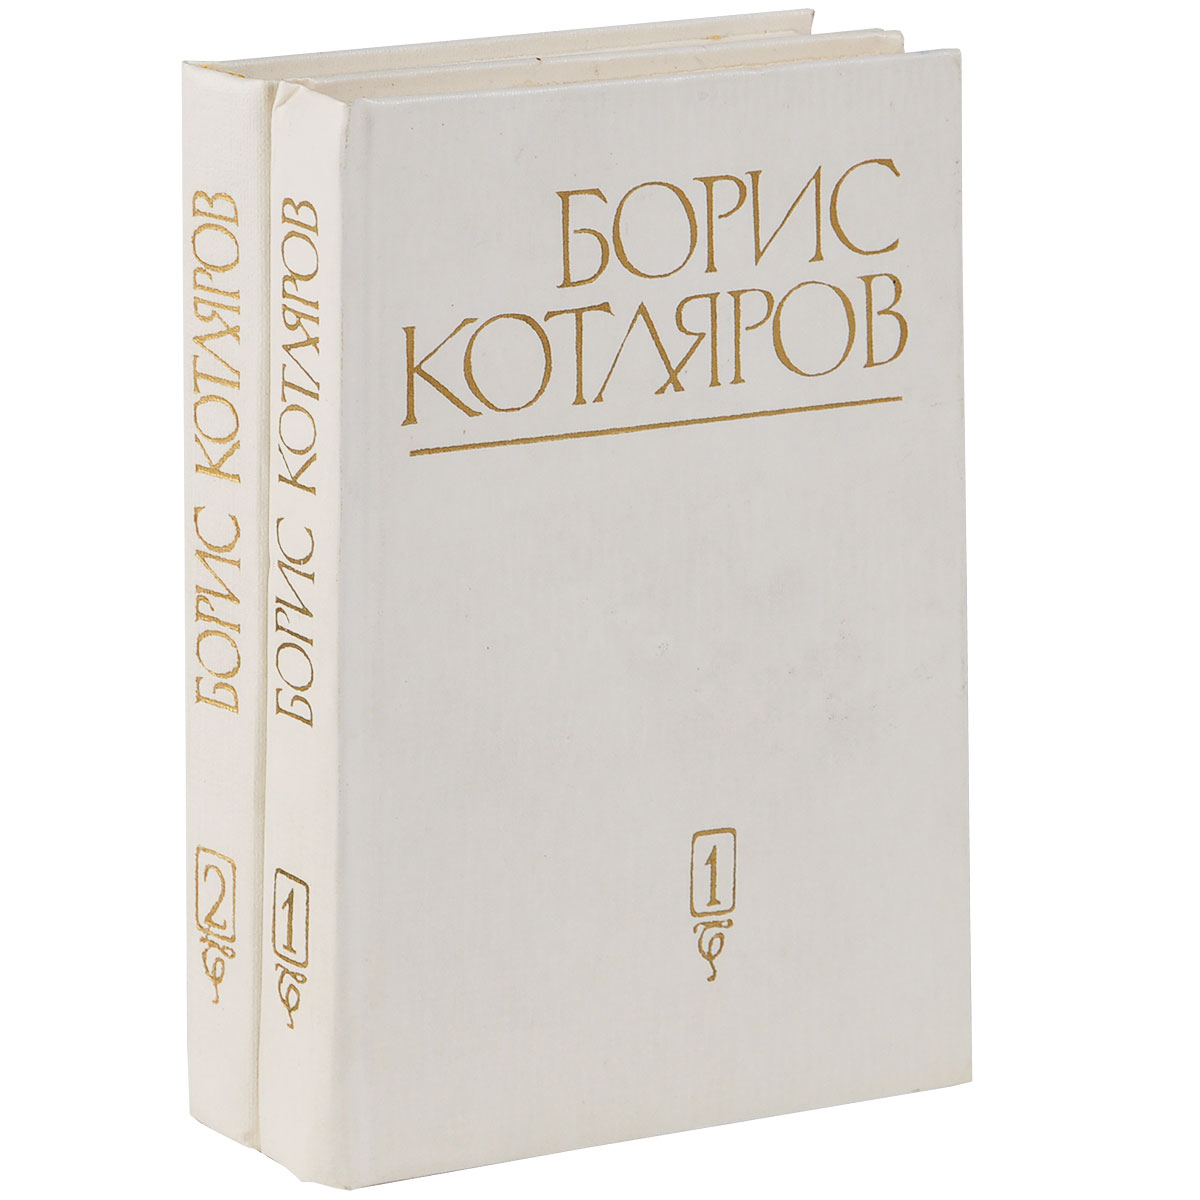 Борис Котляров. Избранные произведения в 2 томах